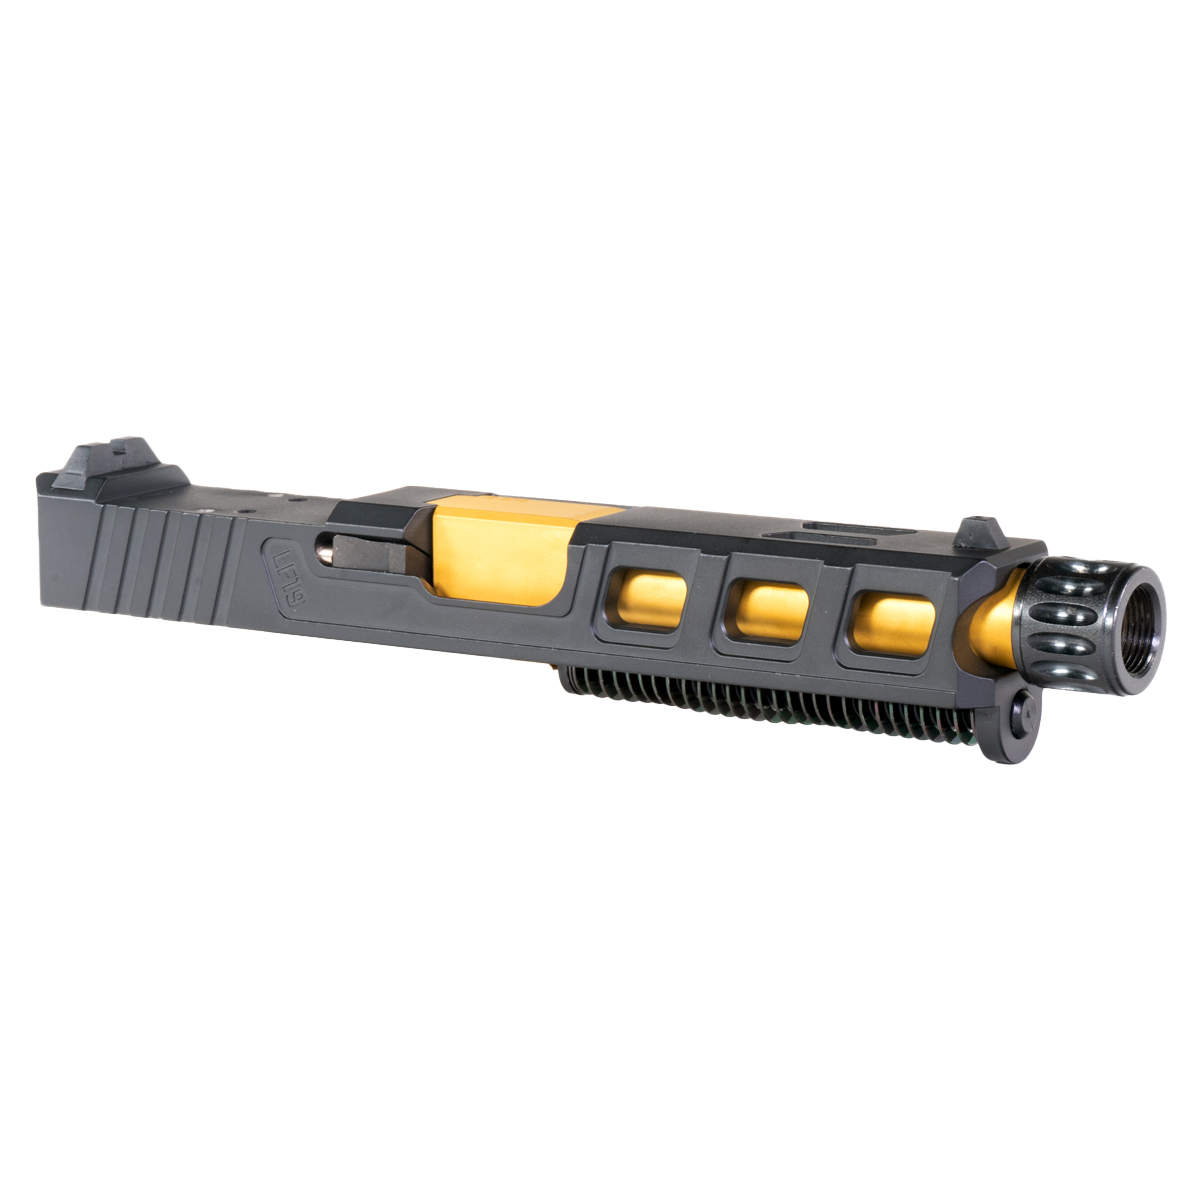 OTD 'Auge' 9mm Complete Slide Kit - Glock 19 Gen 1-3 Compatible